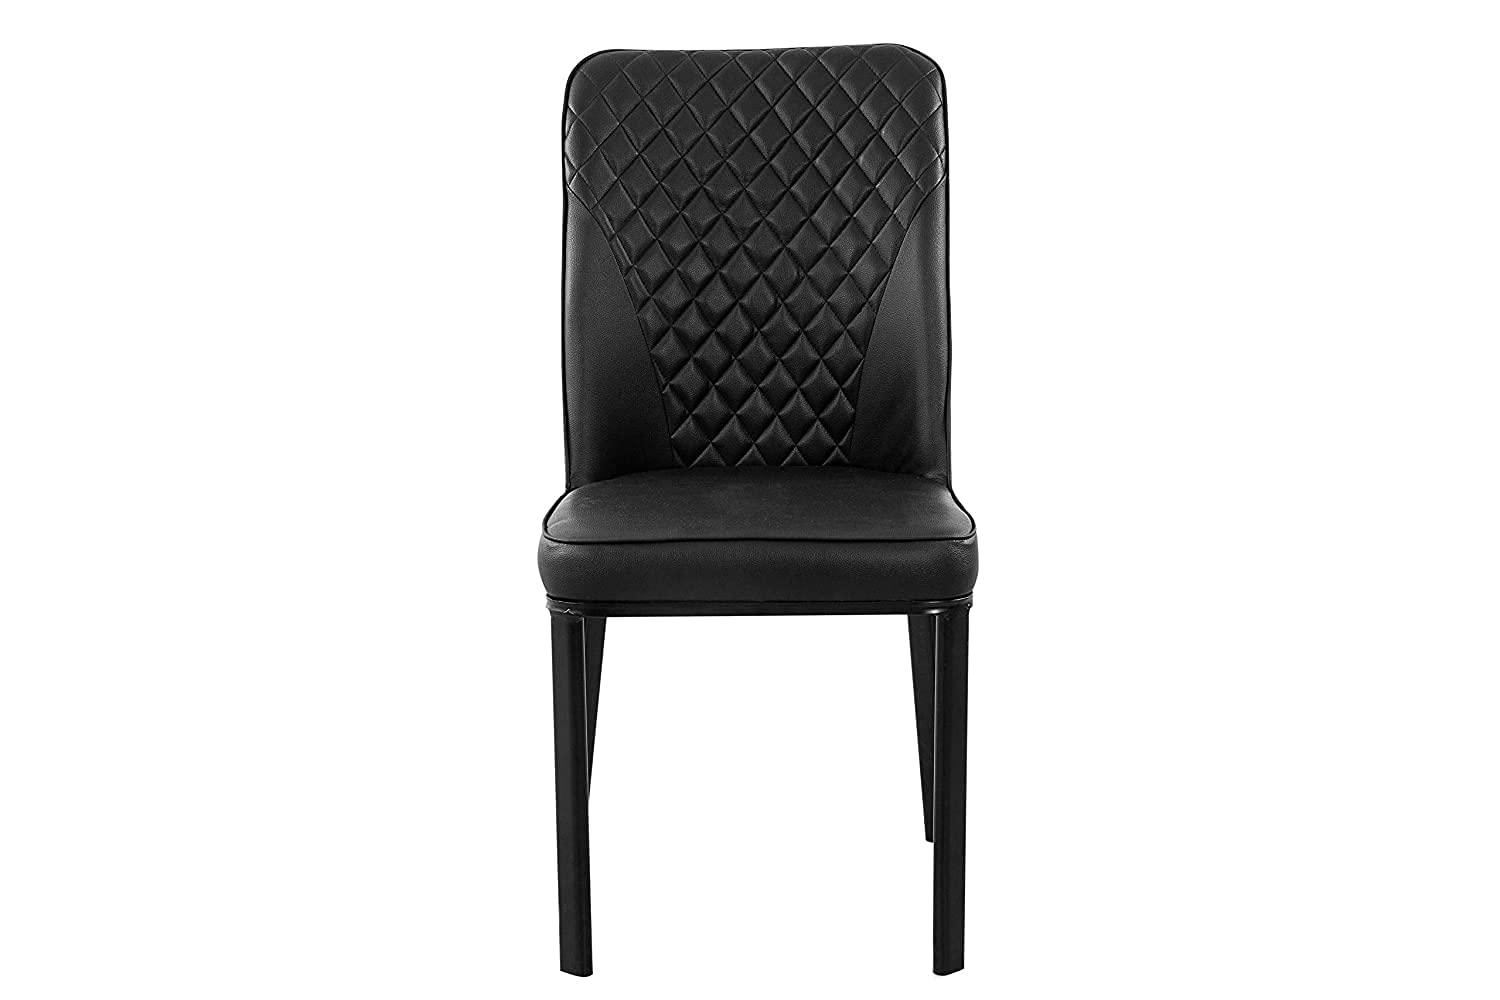 Lyon Metal Dining Chair - metallikafurniture.com